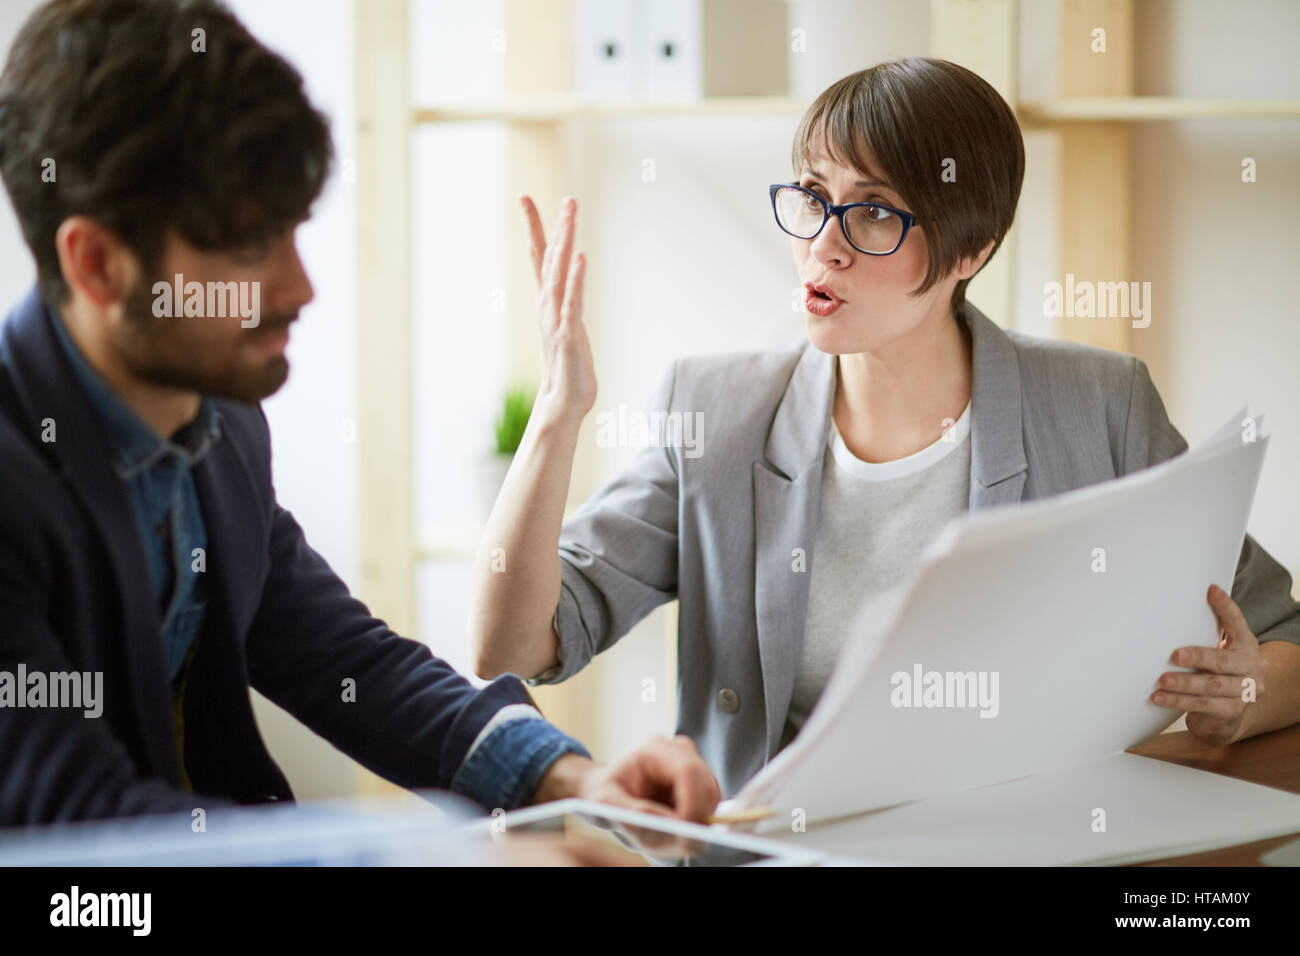 Porträt von zwei erfolgreiche Geschäftsleute, die Kommunikation im Büro, energische Frau gestikulieren aktiv erläutert und Arbeitspläne und Dokumentation d Stockfoto